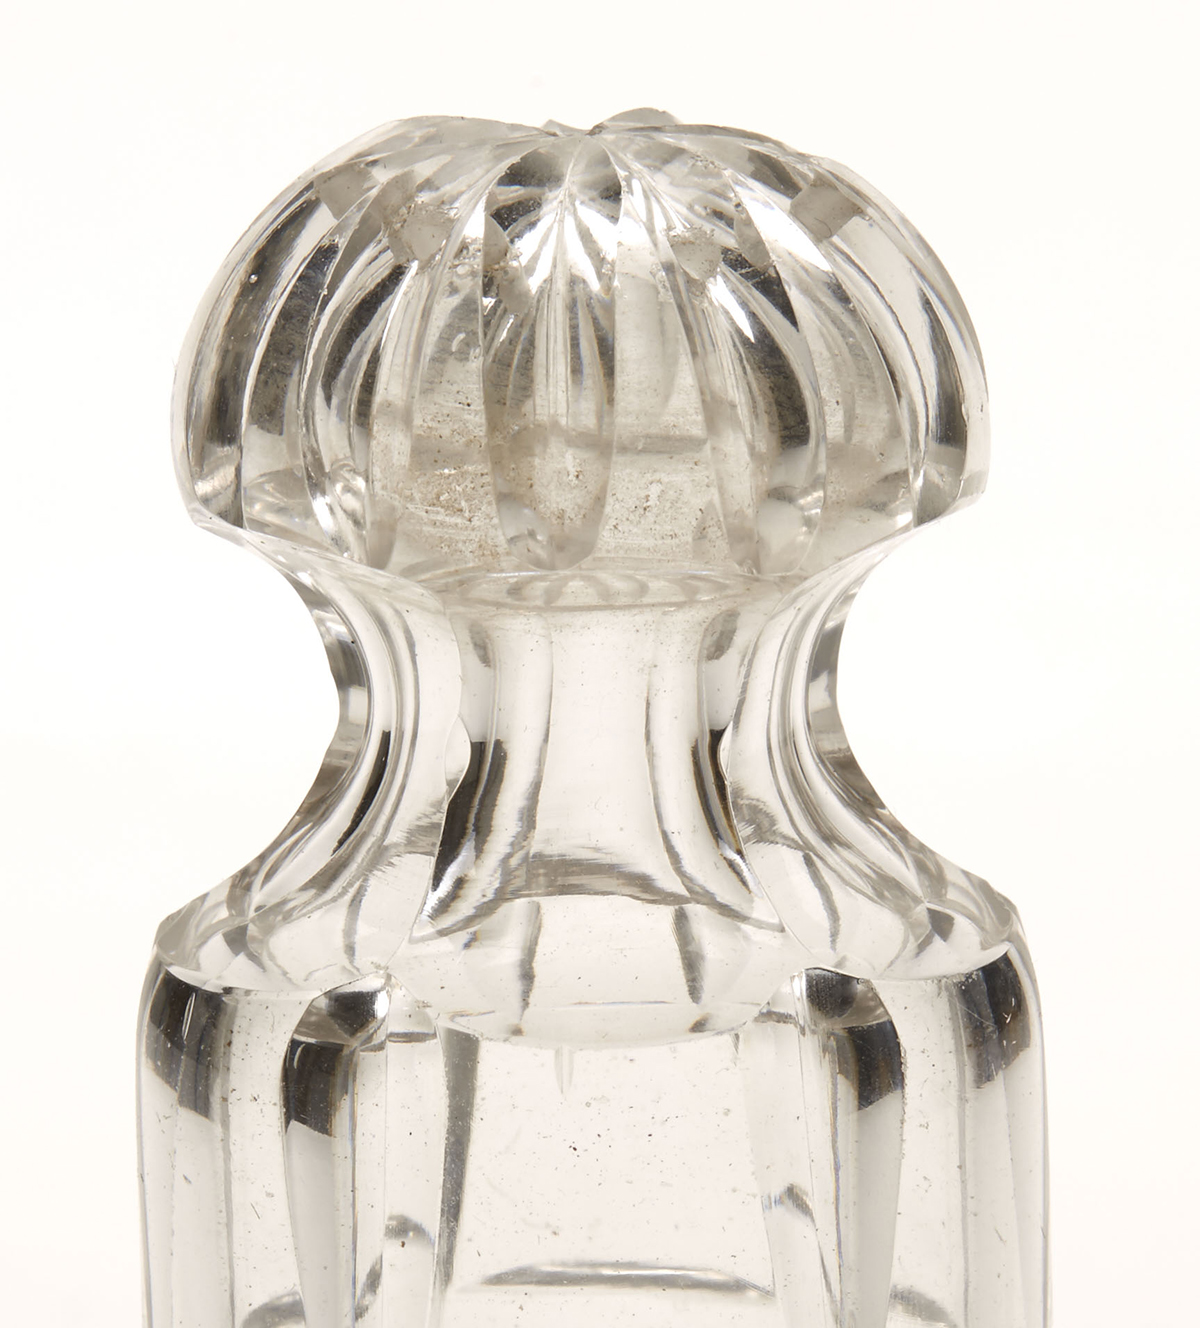 ANTIQUE GEORGIAN CUT GLASS POUNCE POT c.1820 - Image 5 of 5